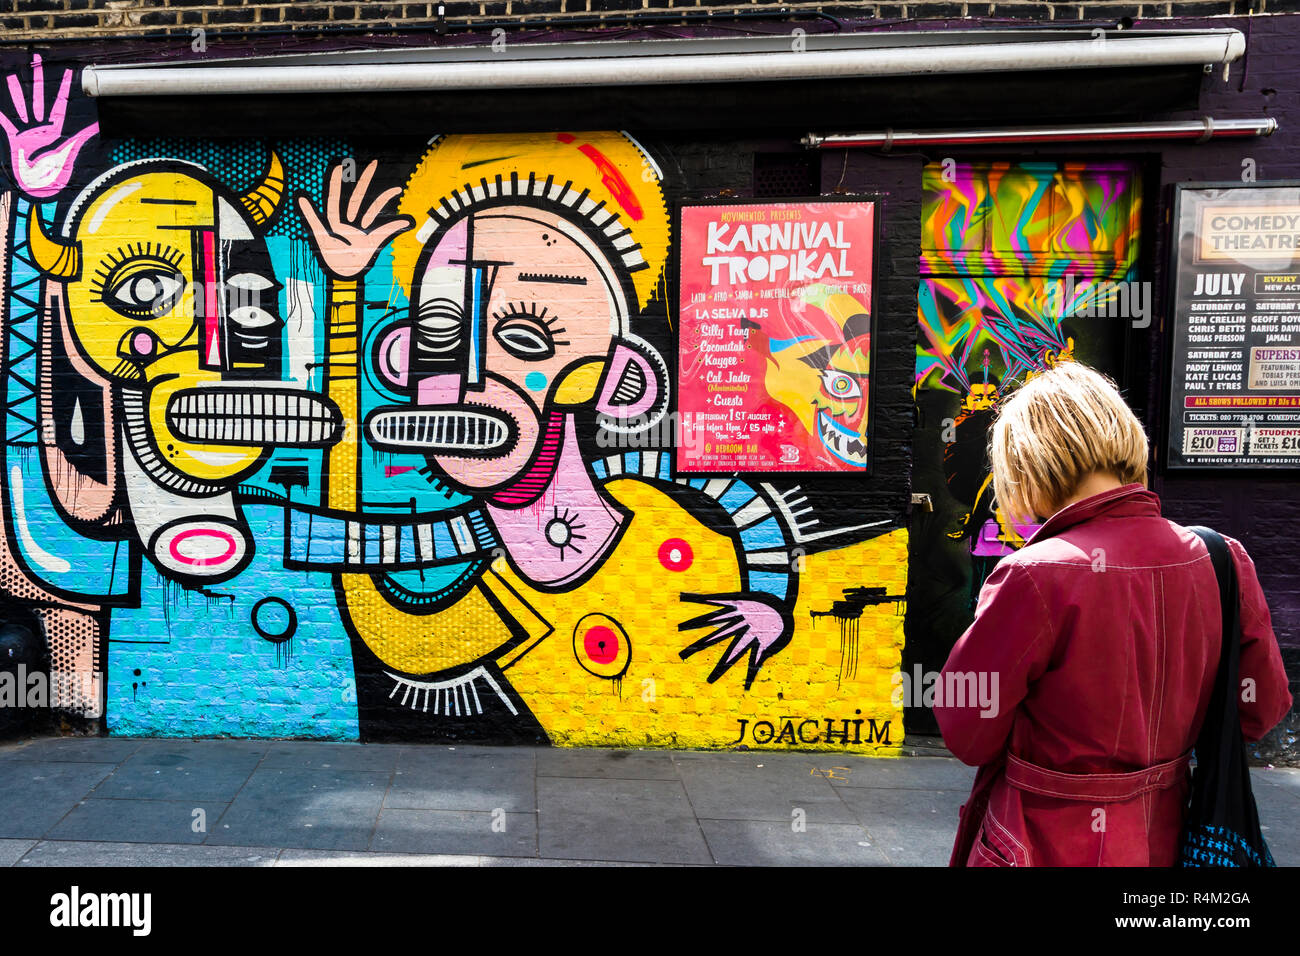 Street Art by Joachim in London Stock Photo